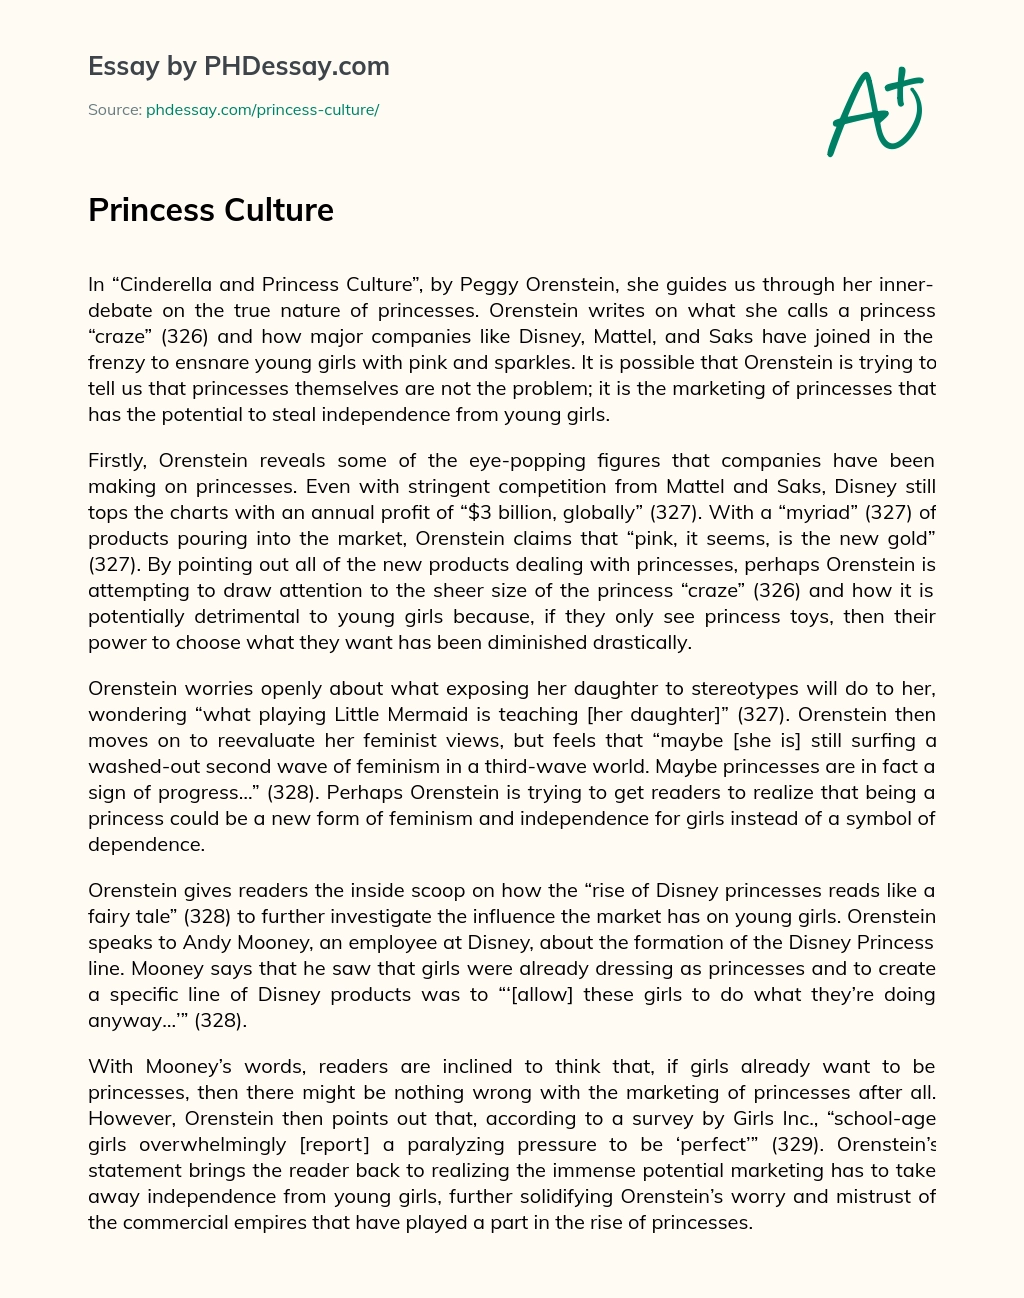 Princess Culture essay